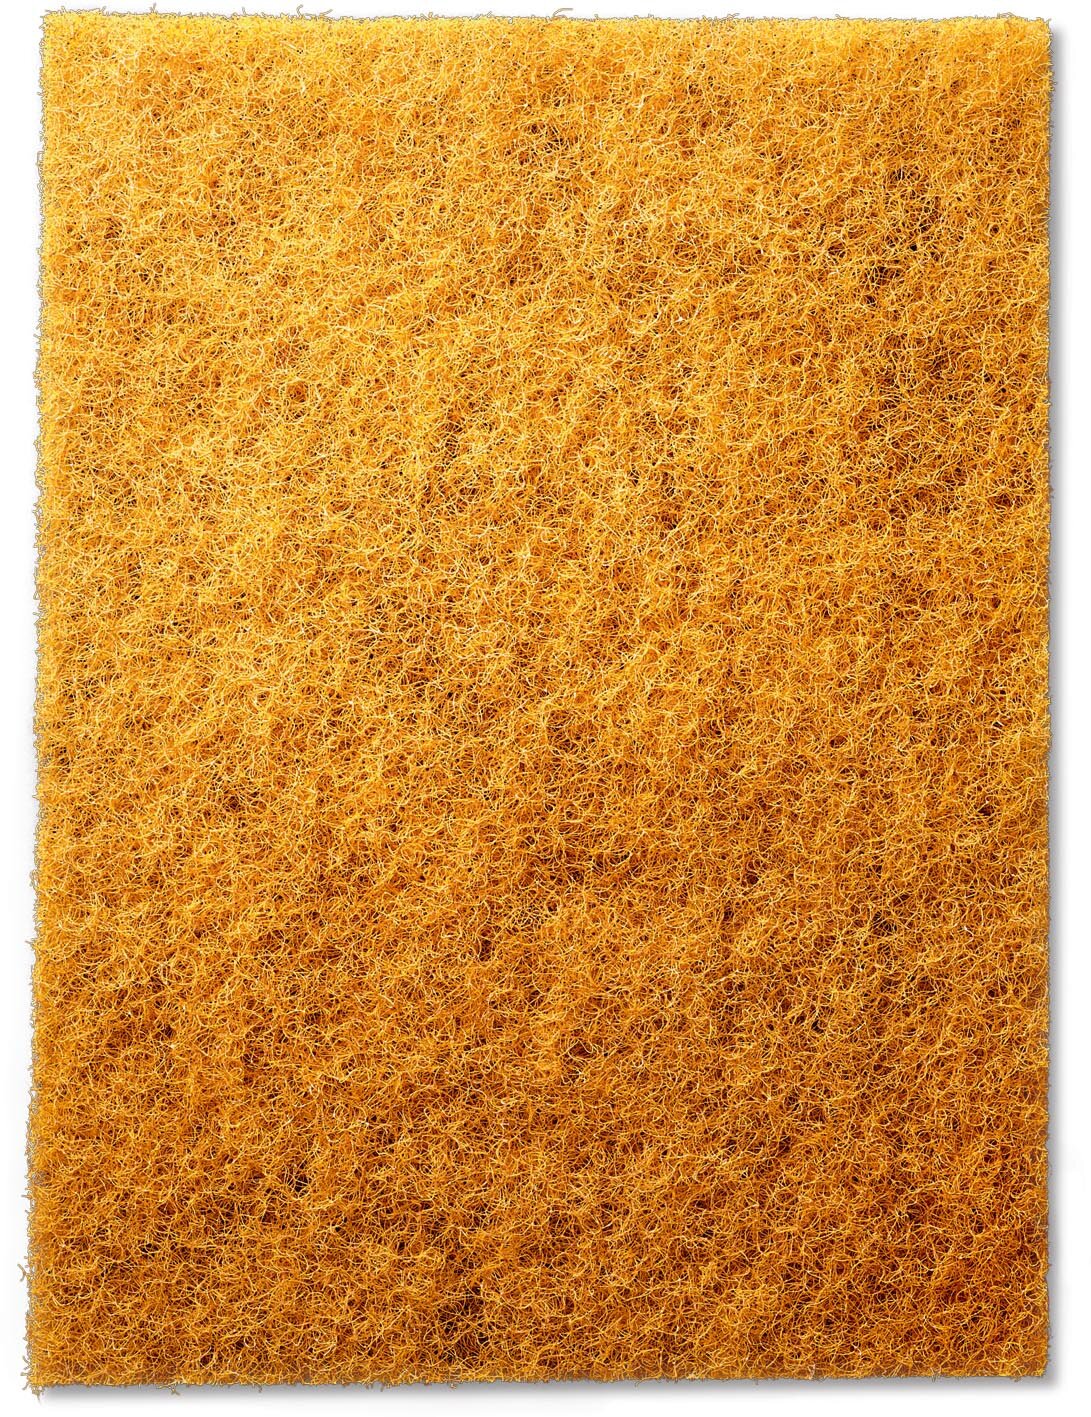 siavlies almohadillas de mano tiras de lijado oro microfino (20 piezas)